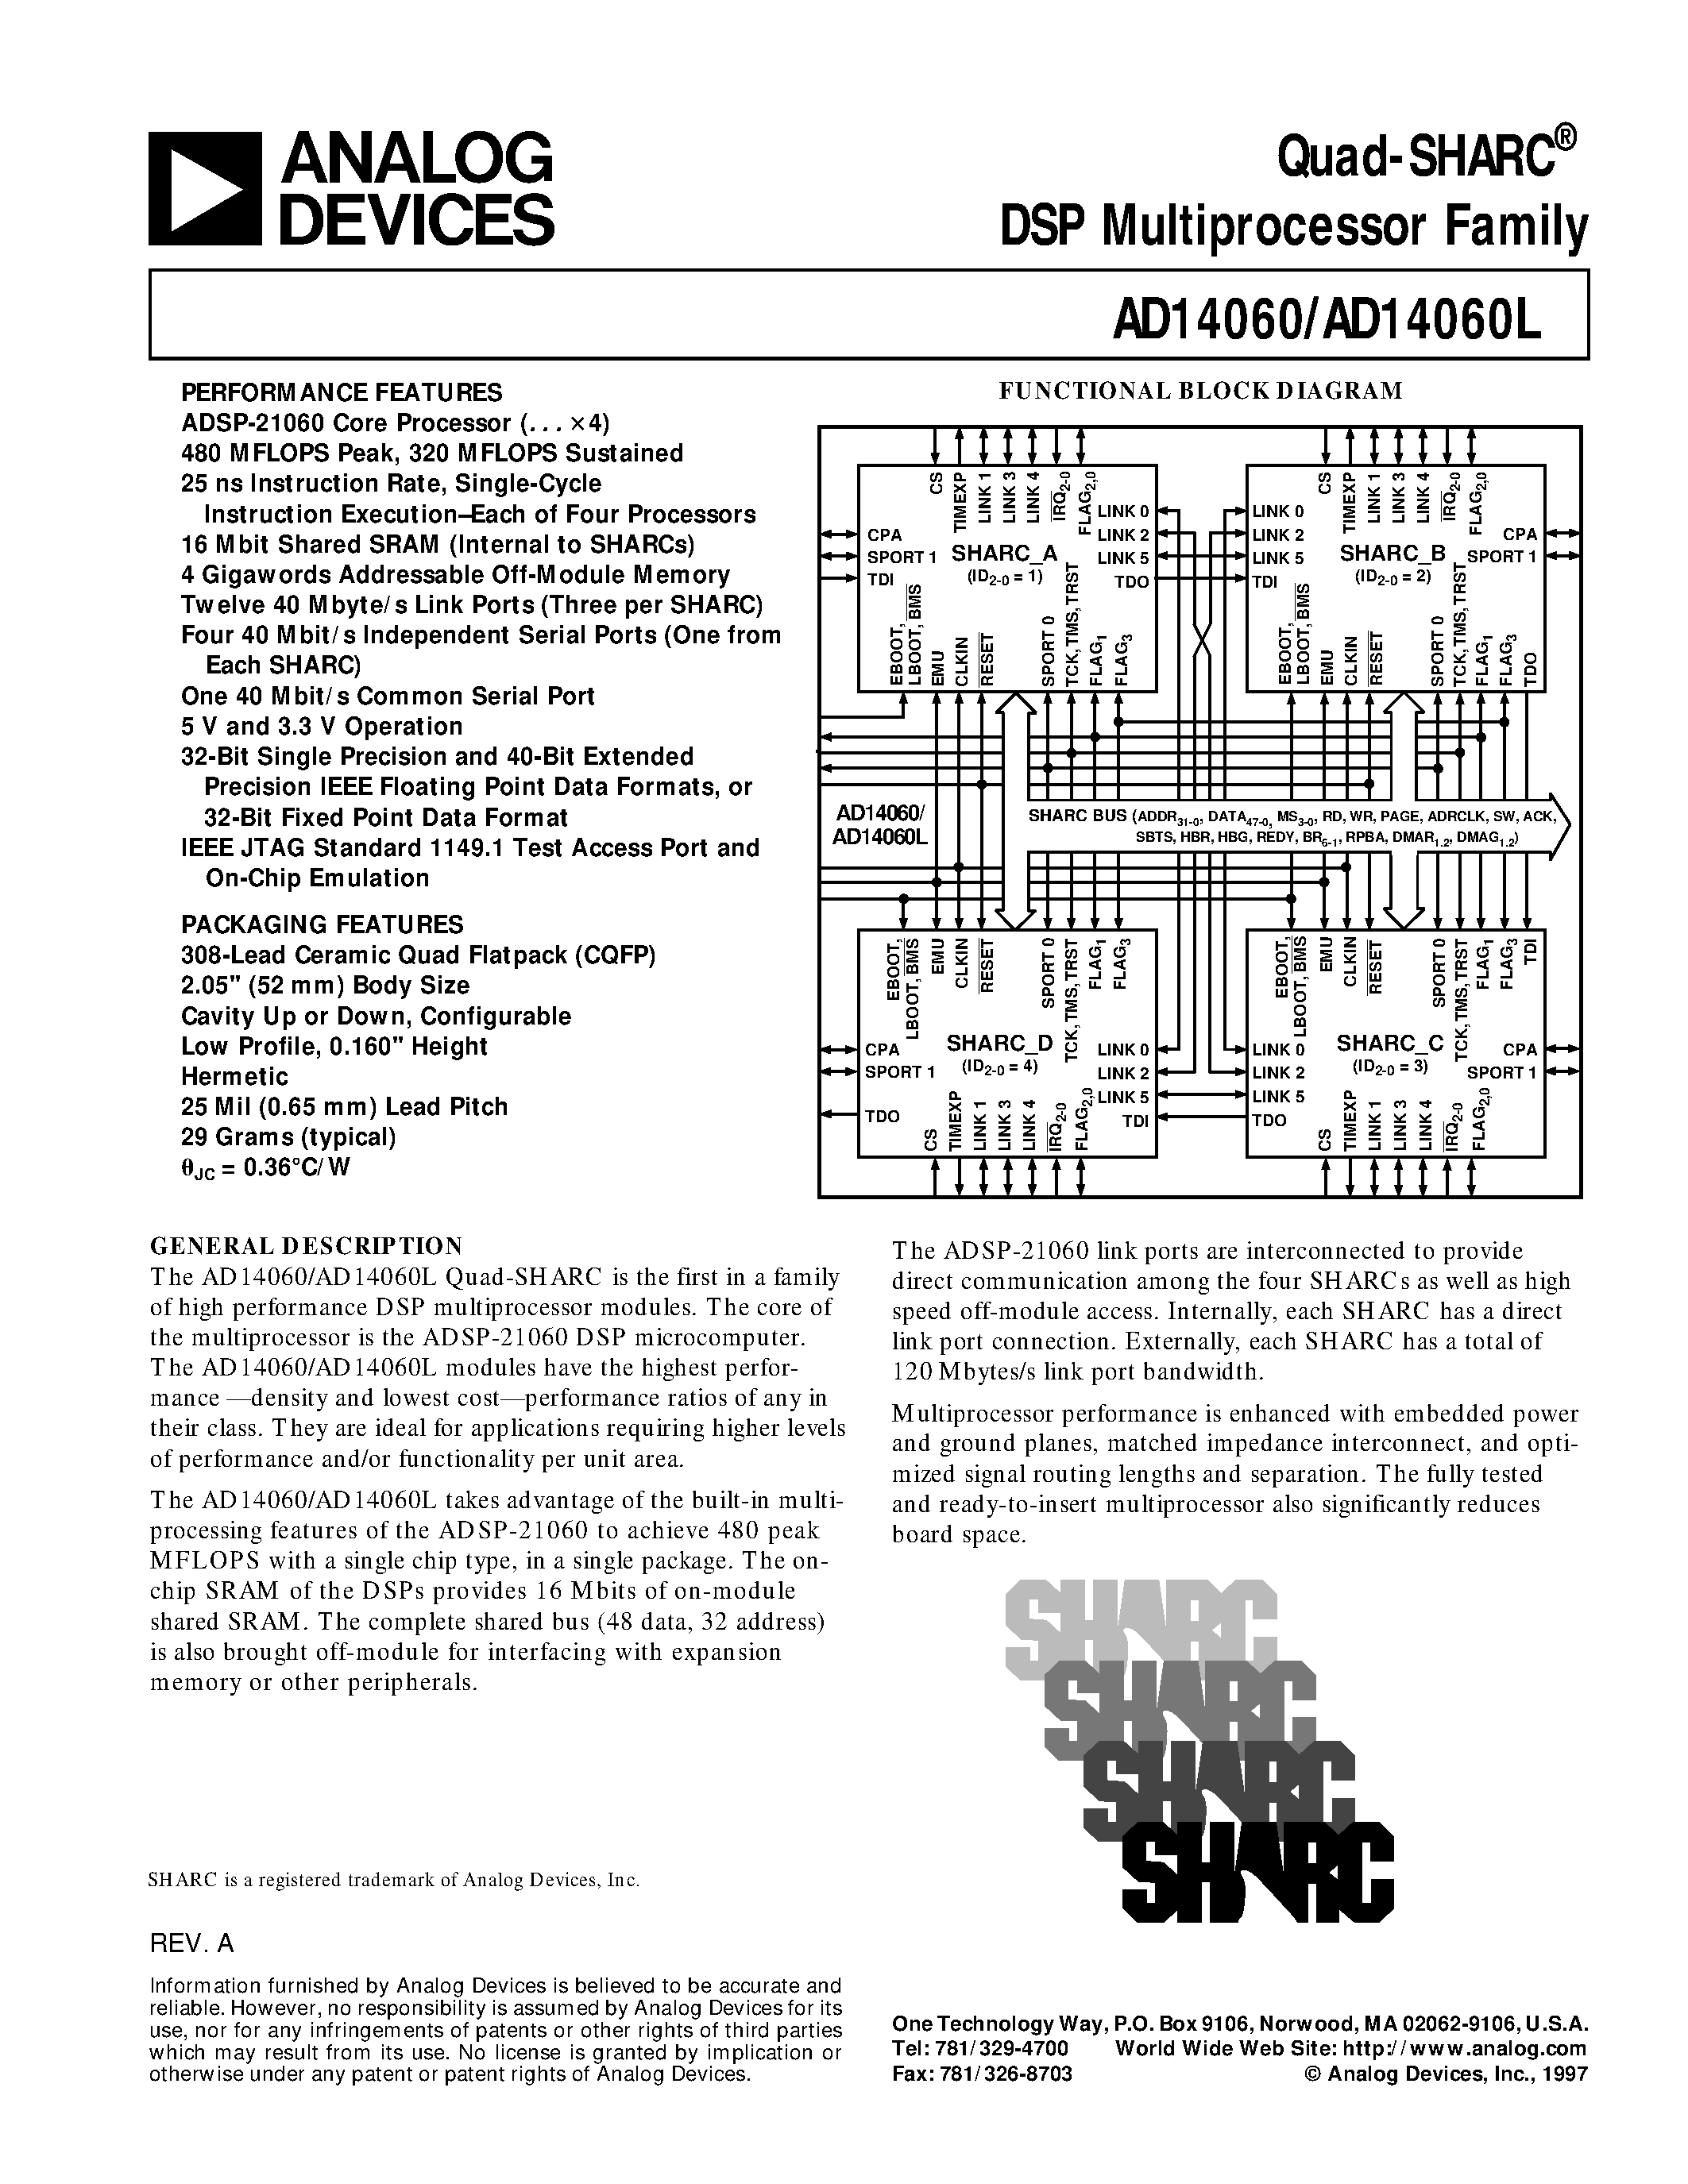 Даташит AD14060L - Quad-SHARC DSP Multiprocessor Family страница 1